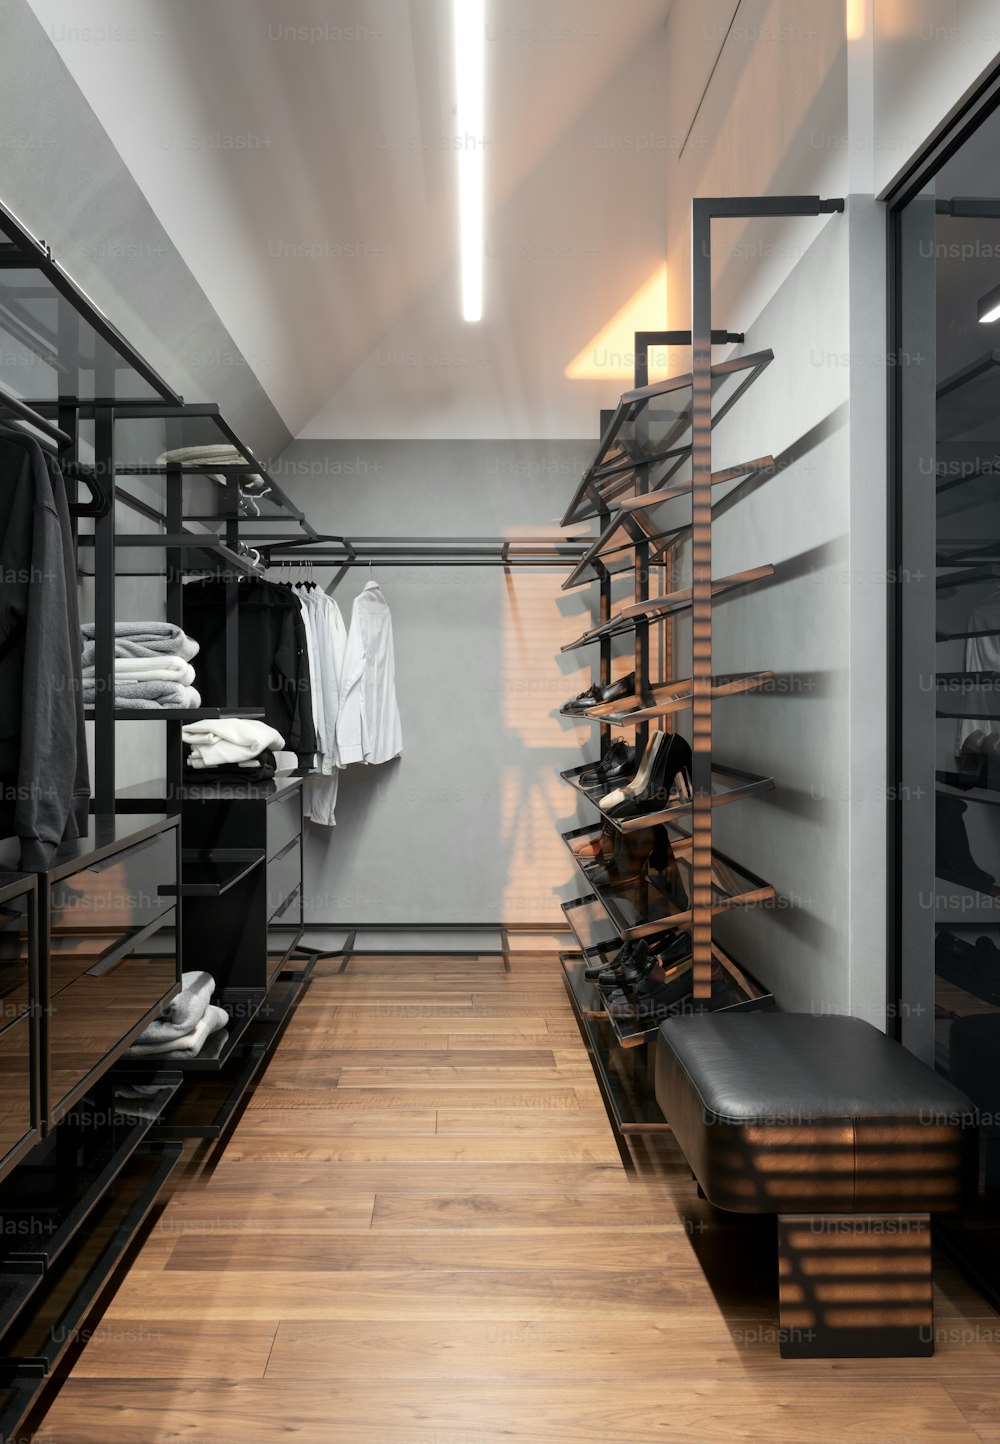 Un vestidor con pisos de madera y estantes